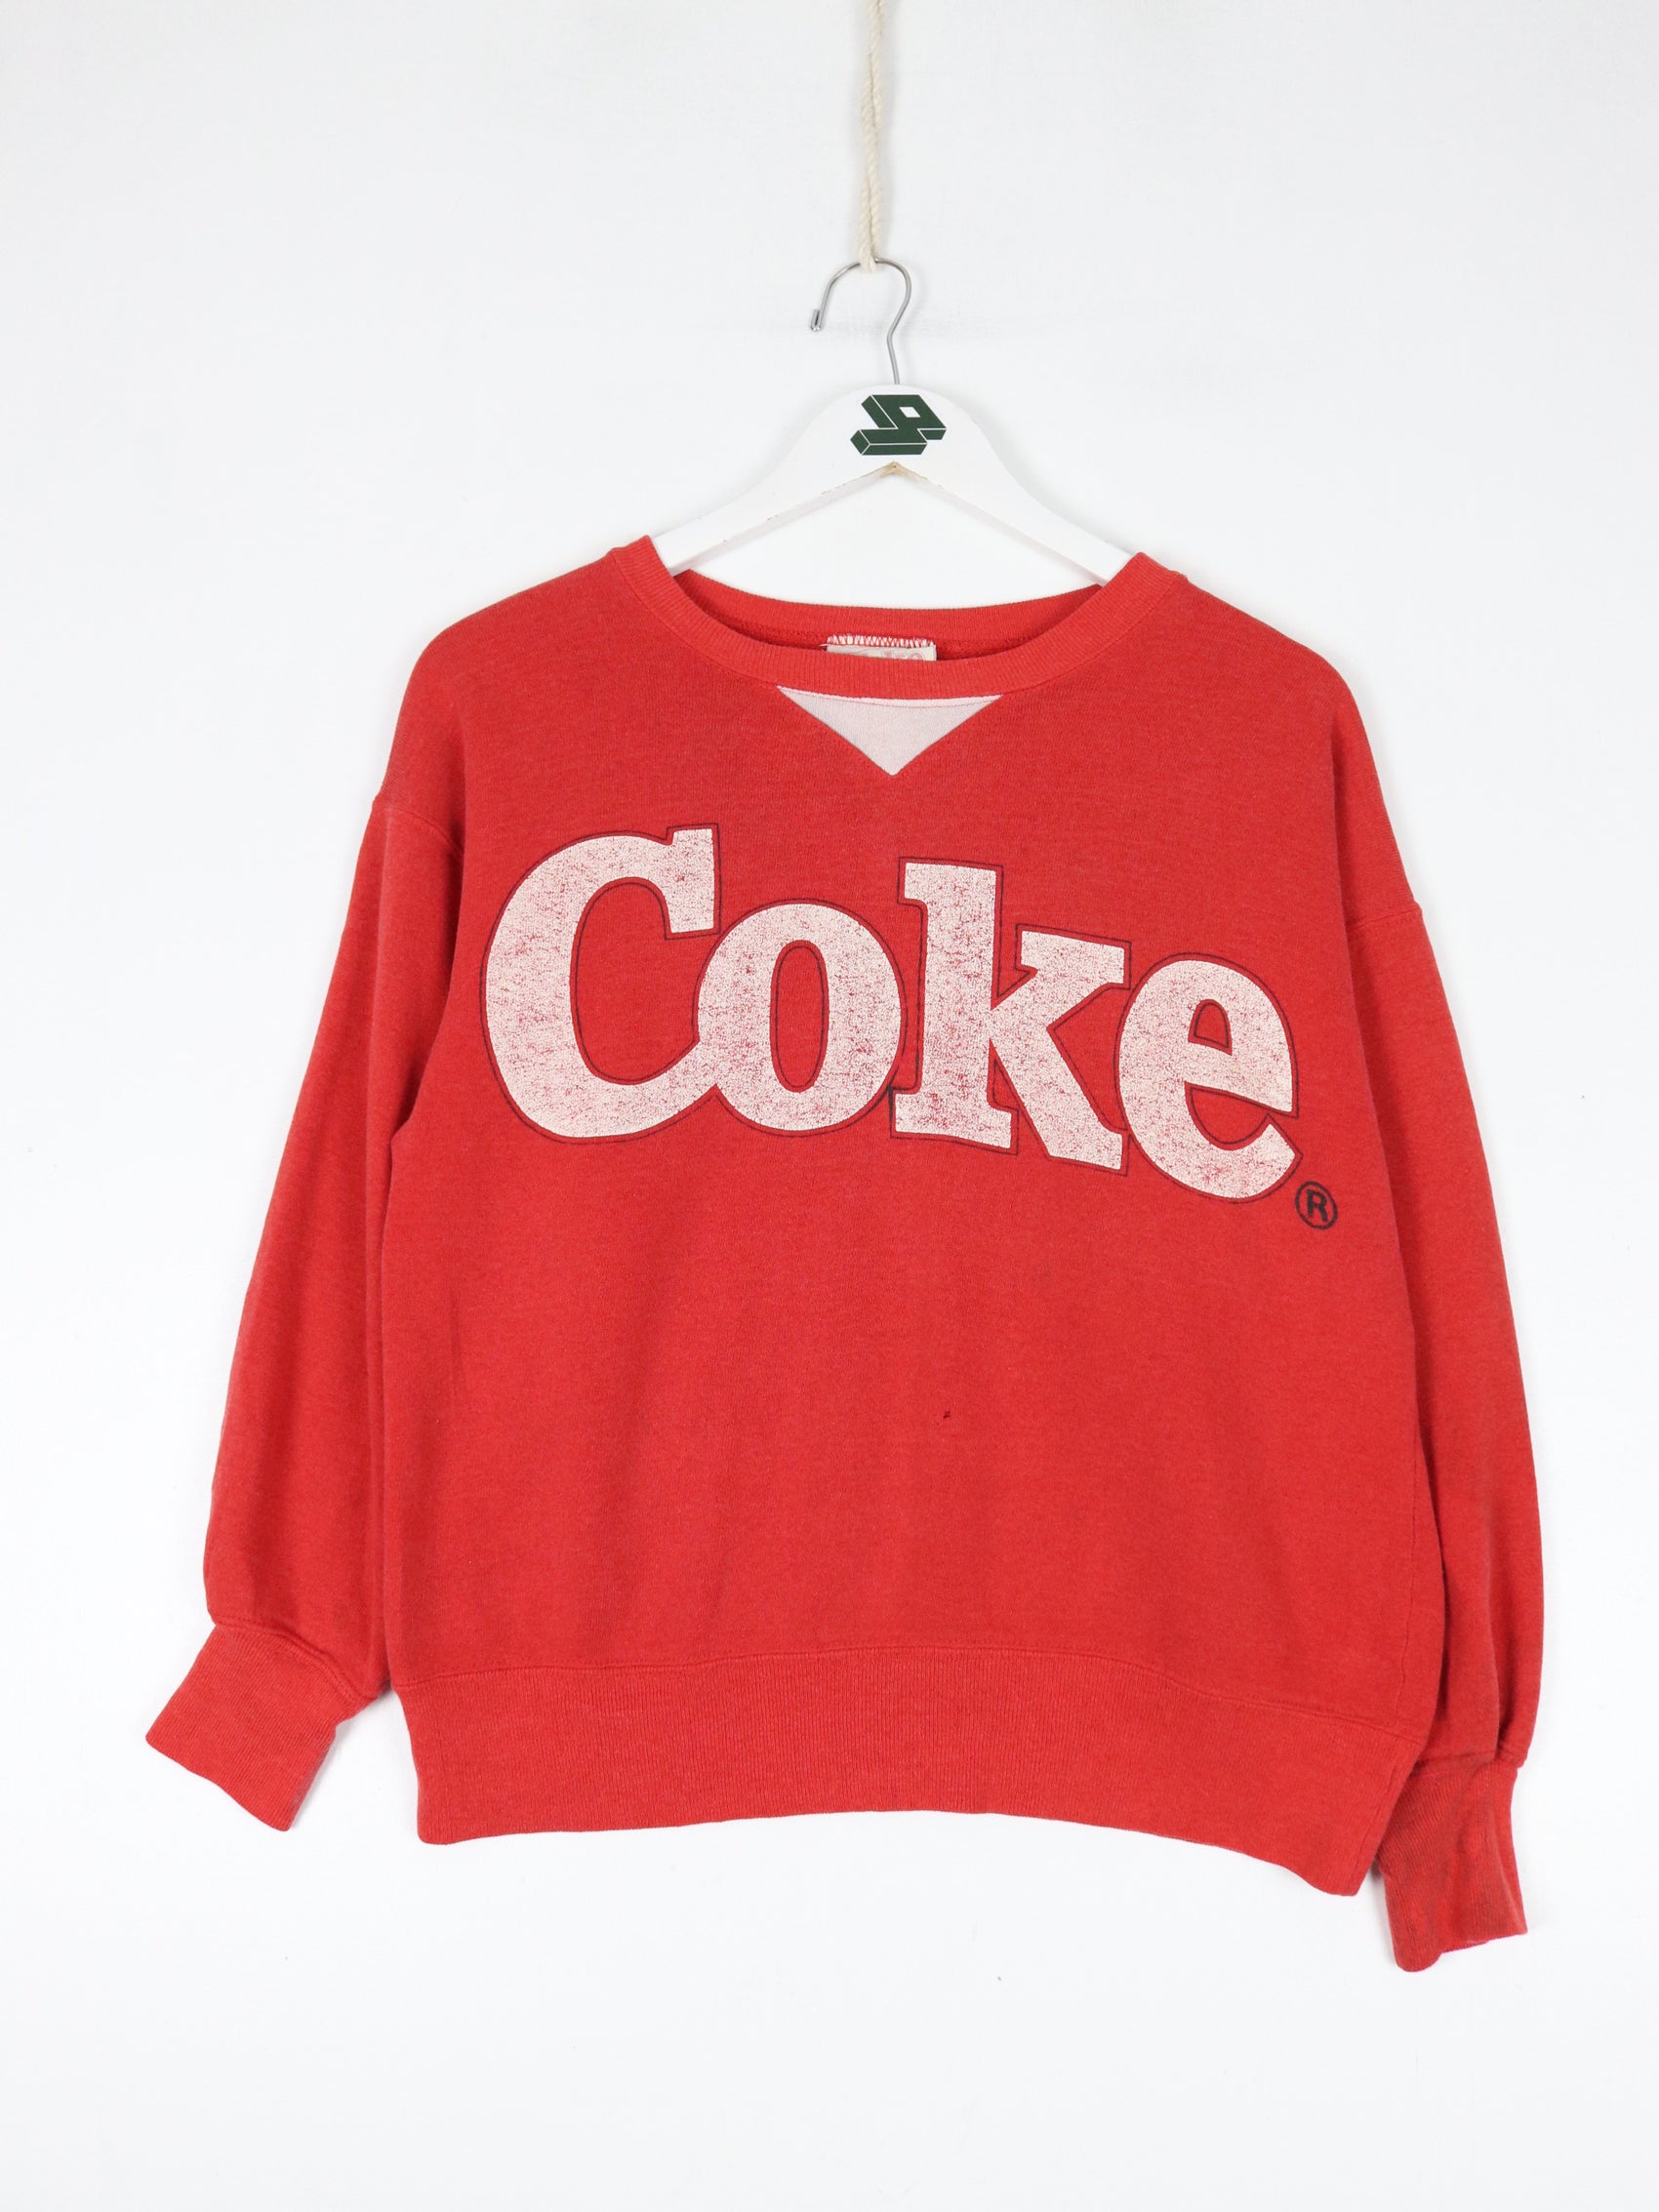 Vintage Coca Cola Sweatshirt Mens Small Red 80s 90s